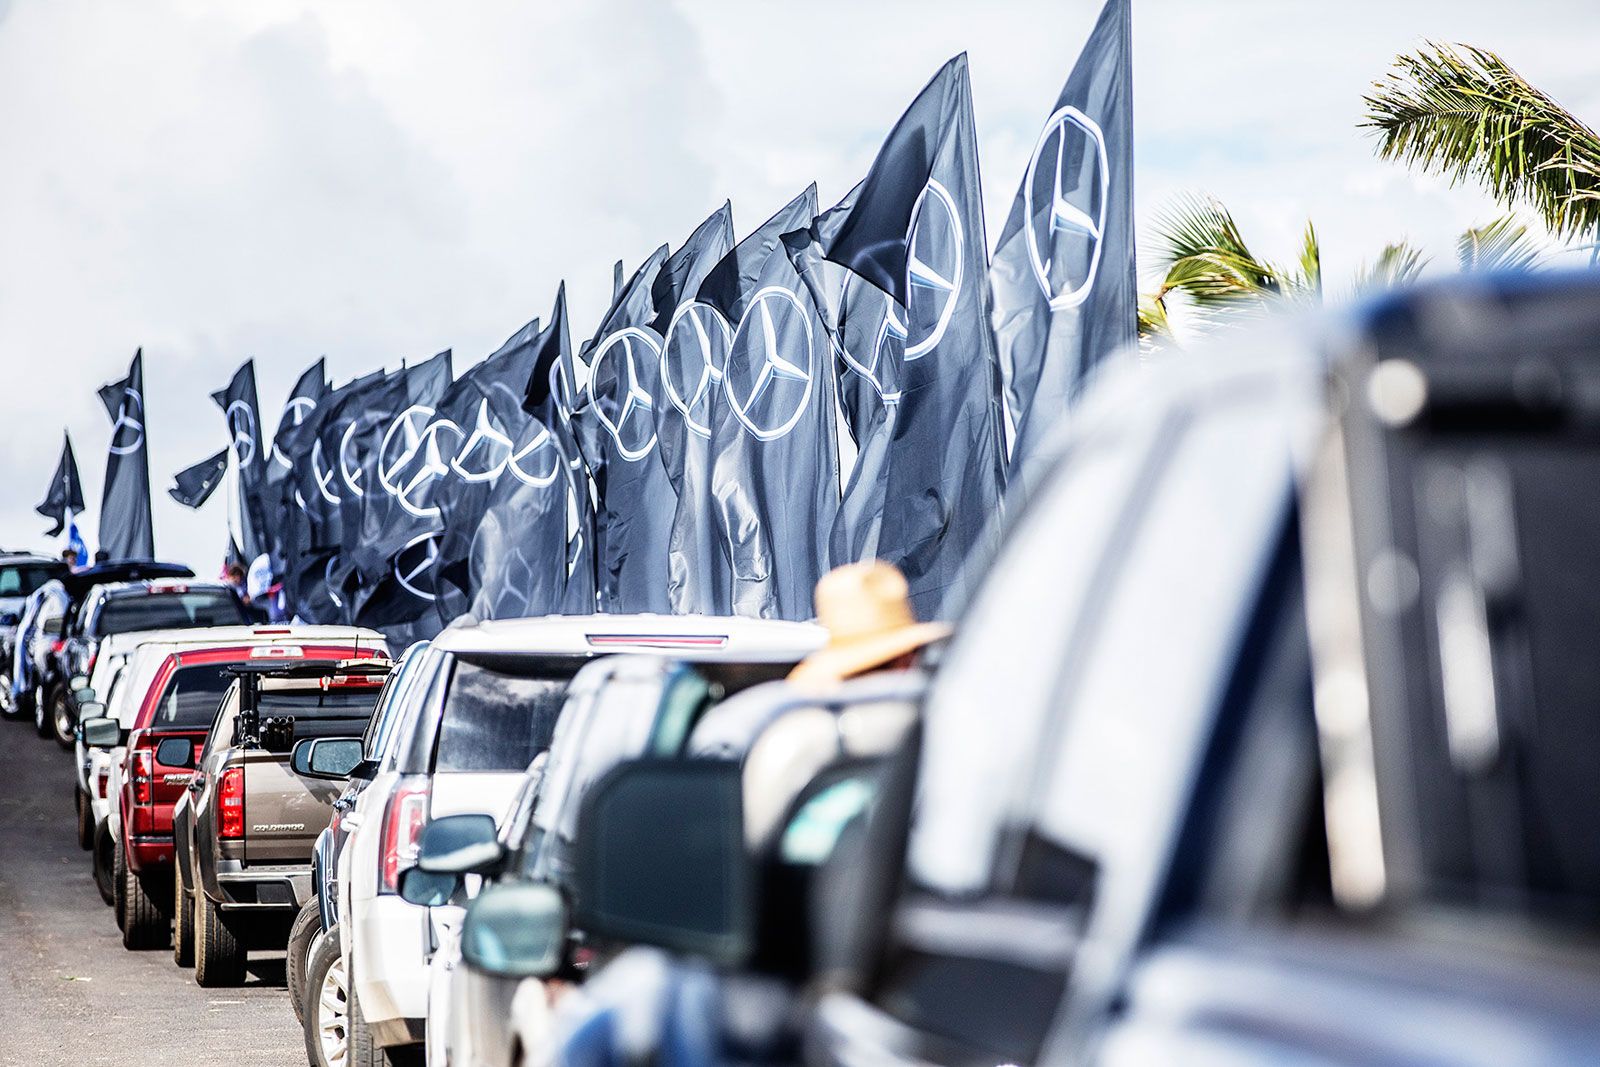 PWA Mercedes-Benz Aloha Classic 2019: Sarah-Quita auf Titelkurs, Locals überzeugen 